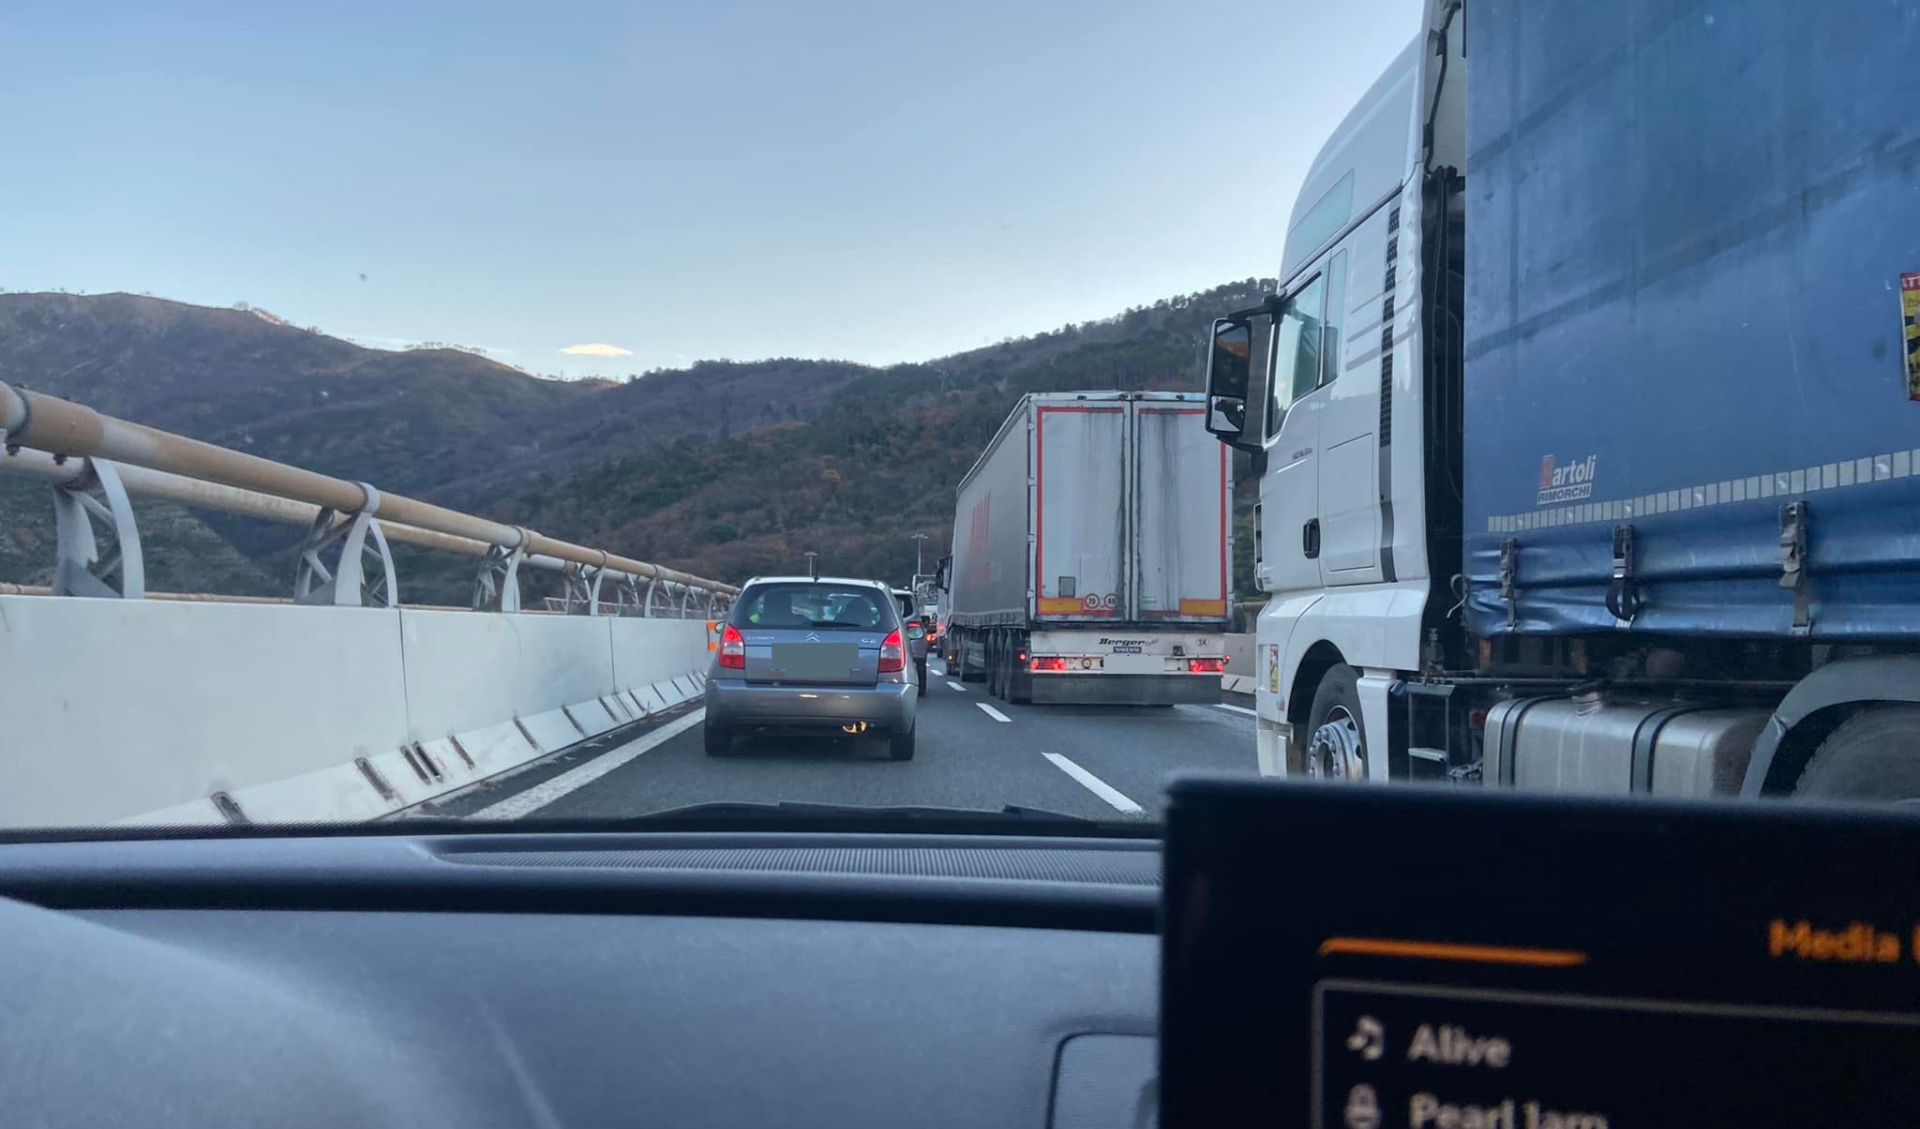 Caos autostrade, lunedì di code in Liguria tra i cantieri